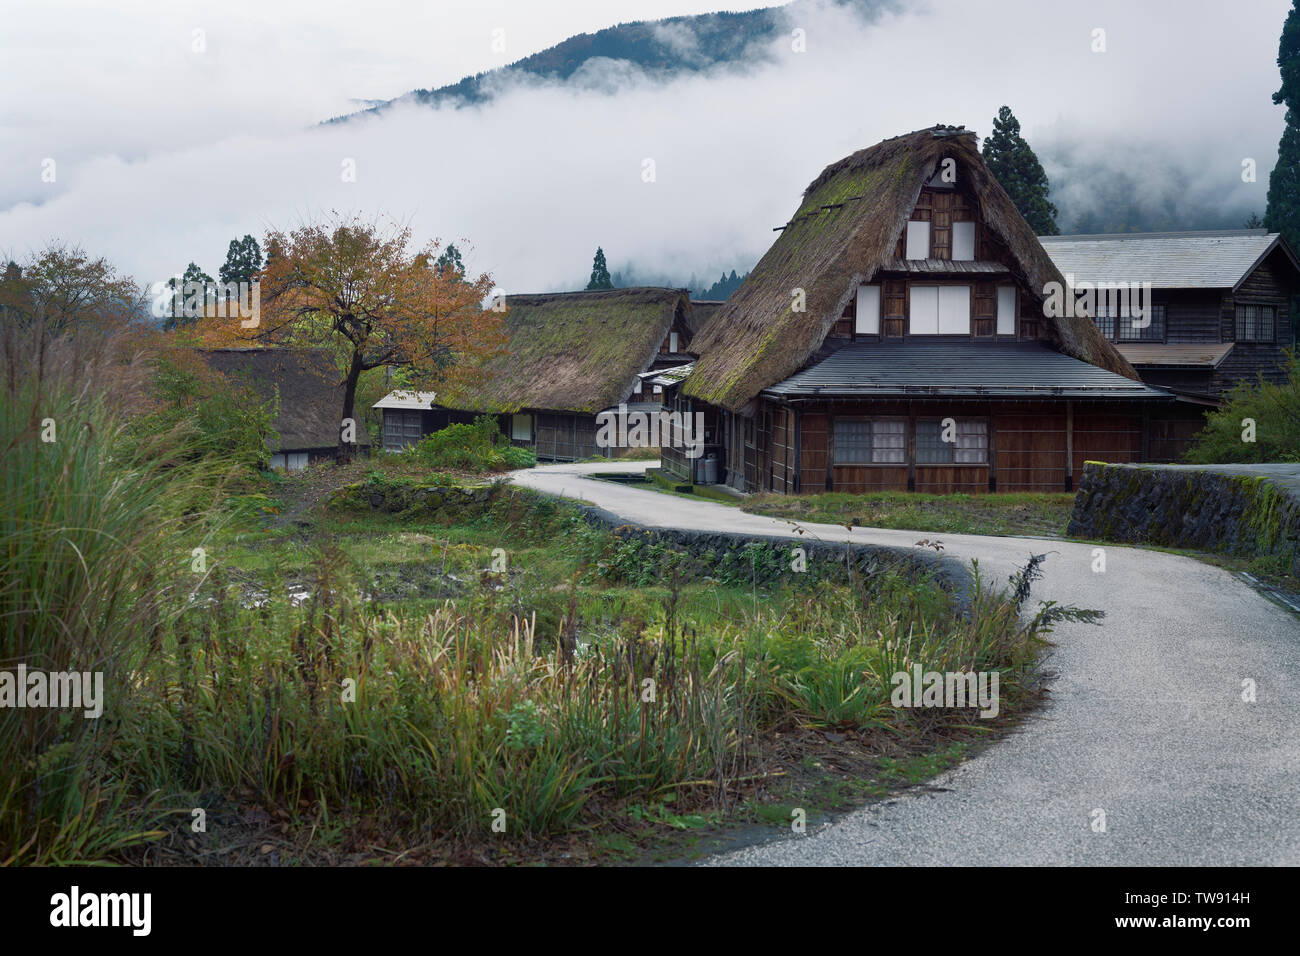 Licenza e stampe alle MaximImages.com:00 - Ainokura, villaggio giapponese con le tradizionali case rurali Gassho zukiri. Toyama, Giappone. Foto Stock